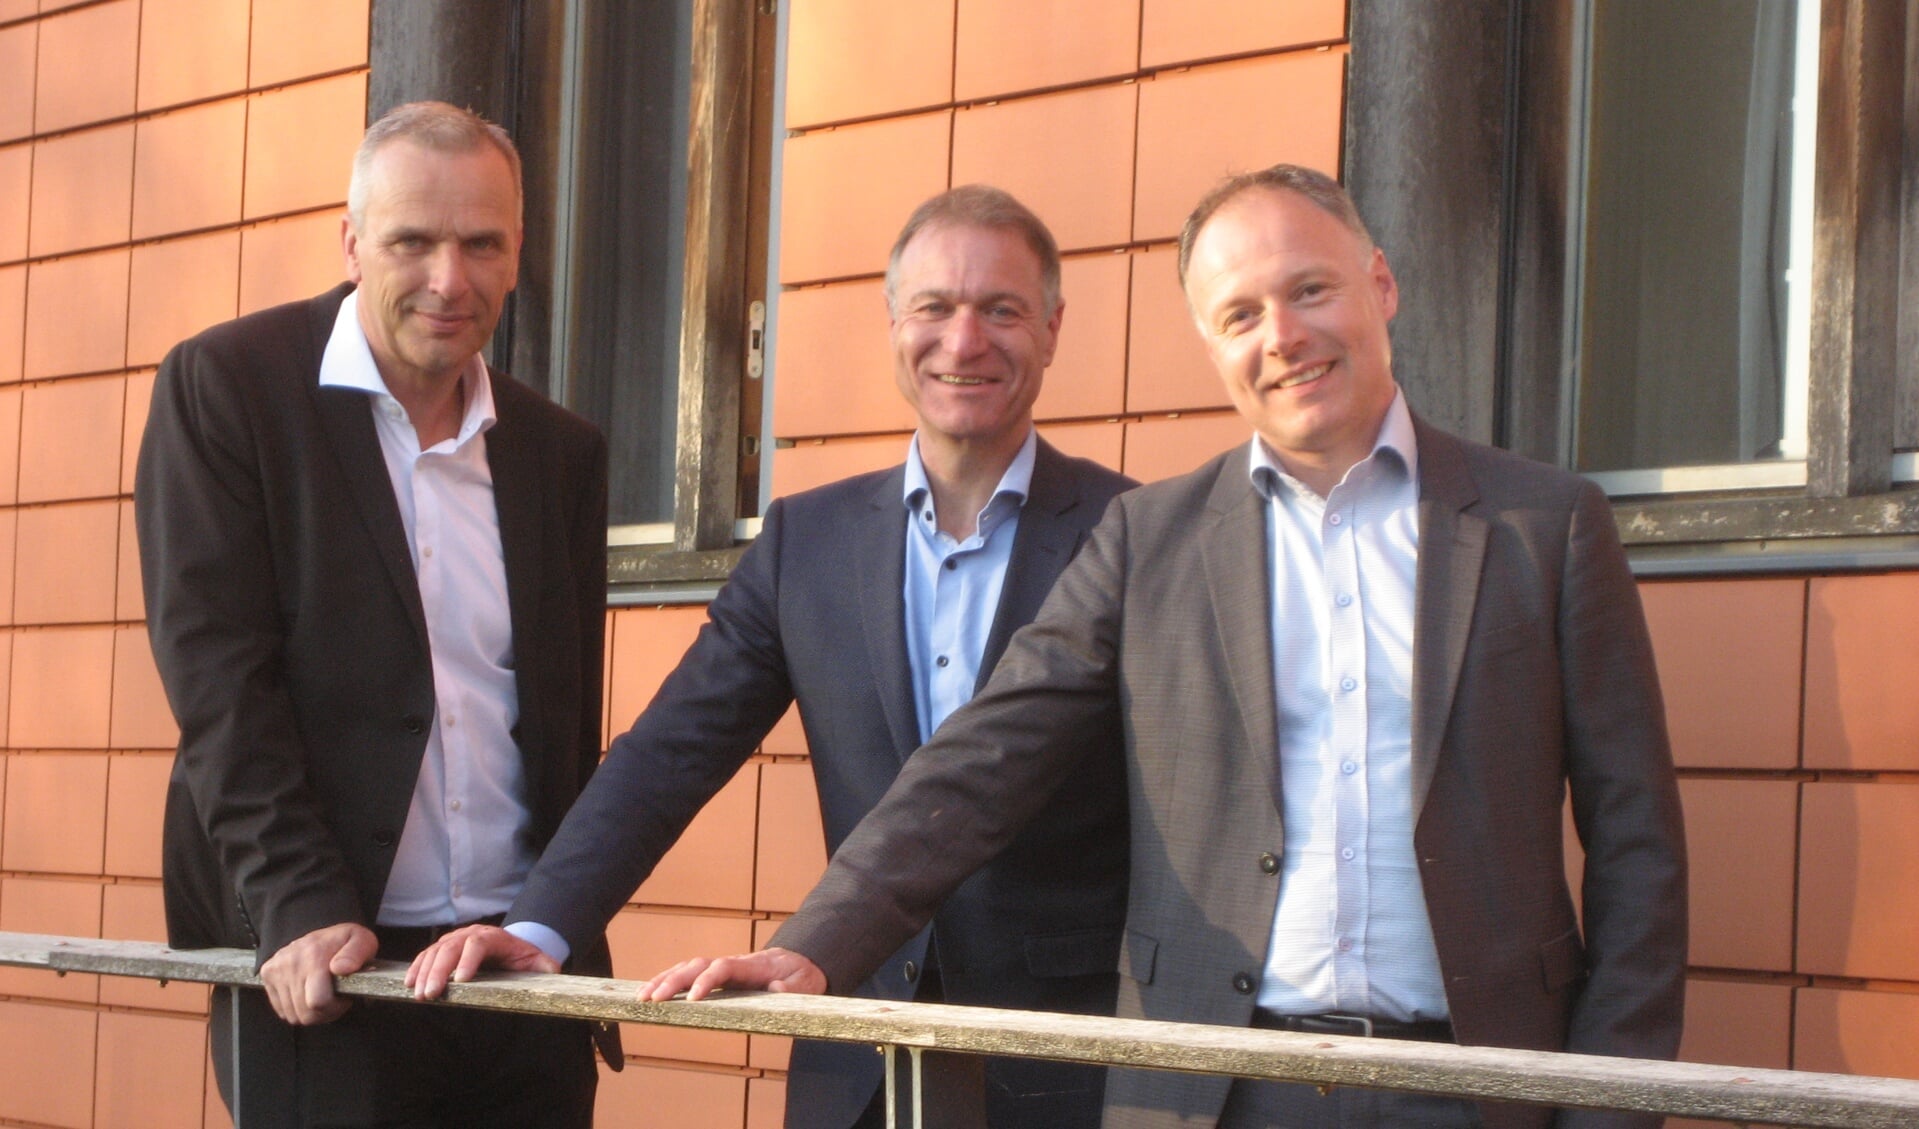 De wethouders die volgende week worden geïnstalleerd: Wim Vos (CDA), Erik van Beurden (GrienLinks-PvdA) en Patrick Kiel (VVD).